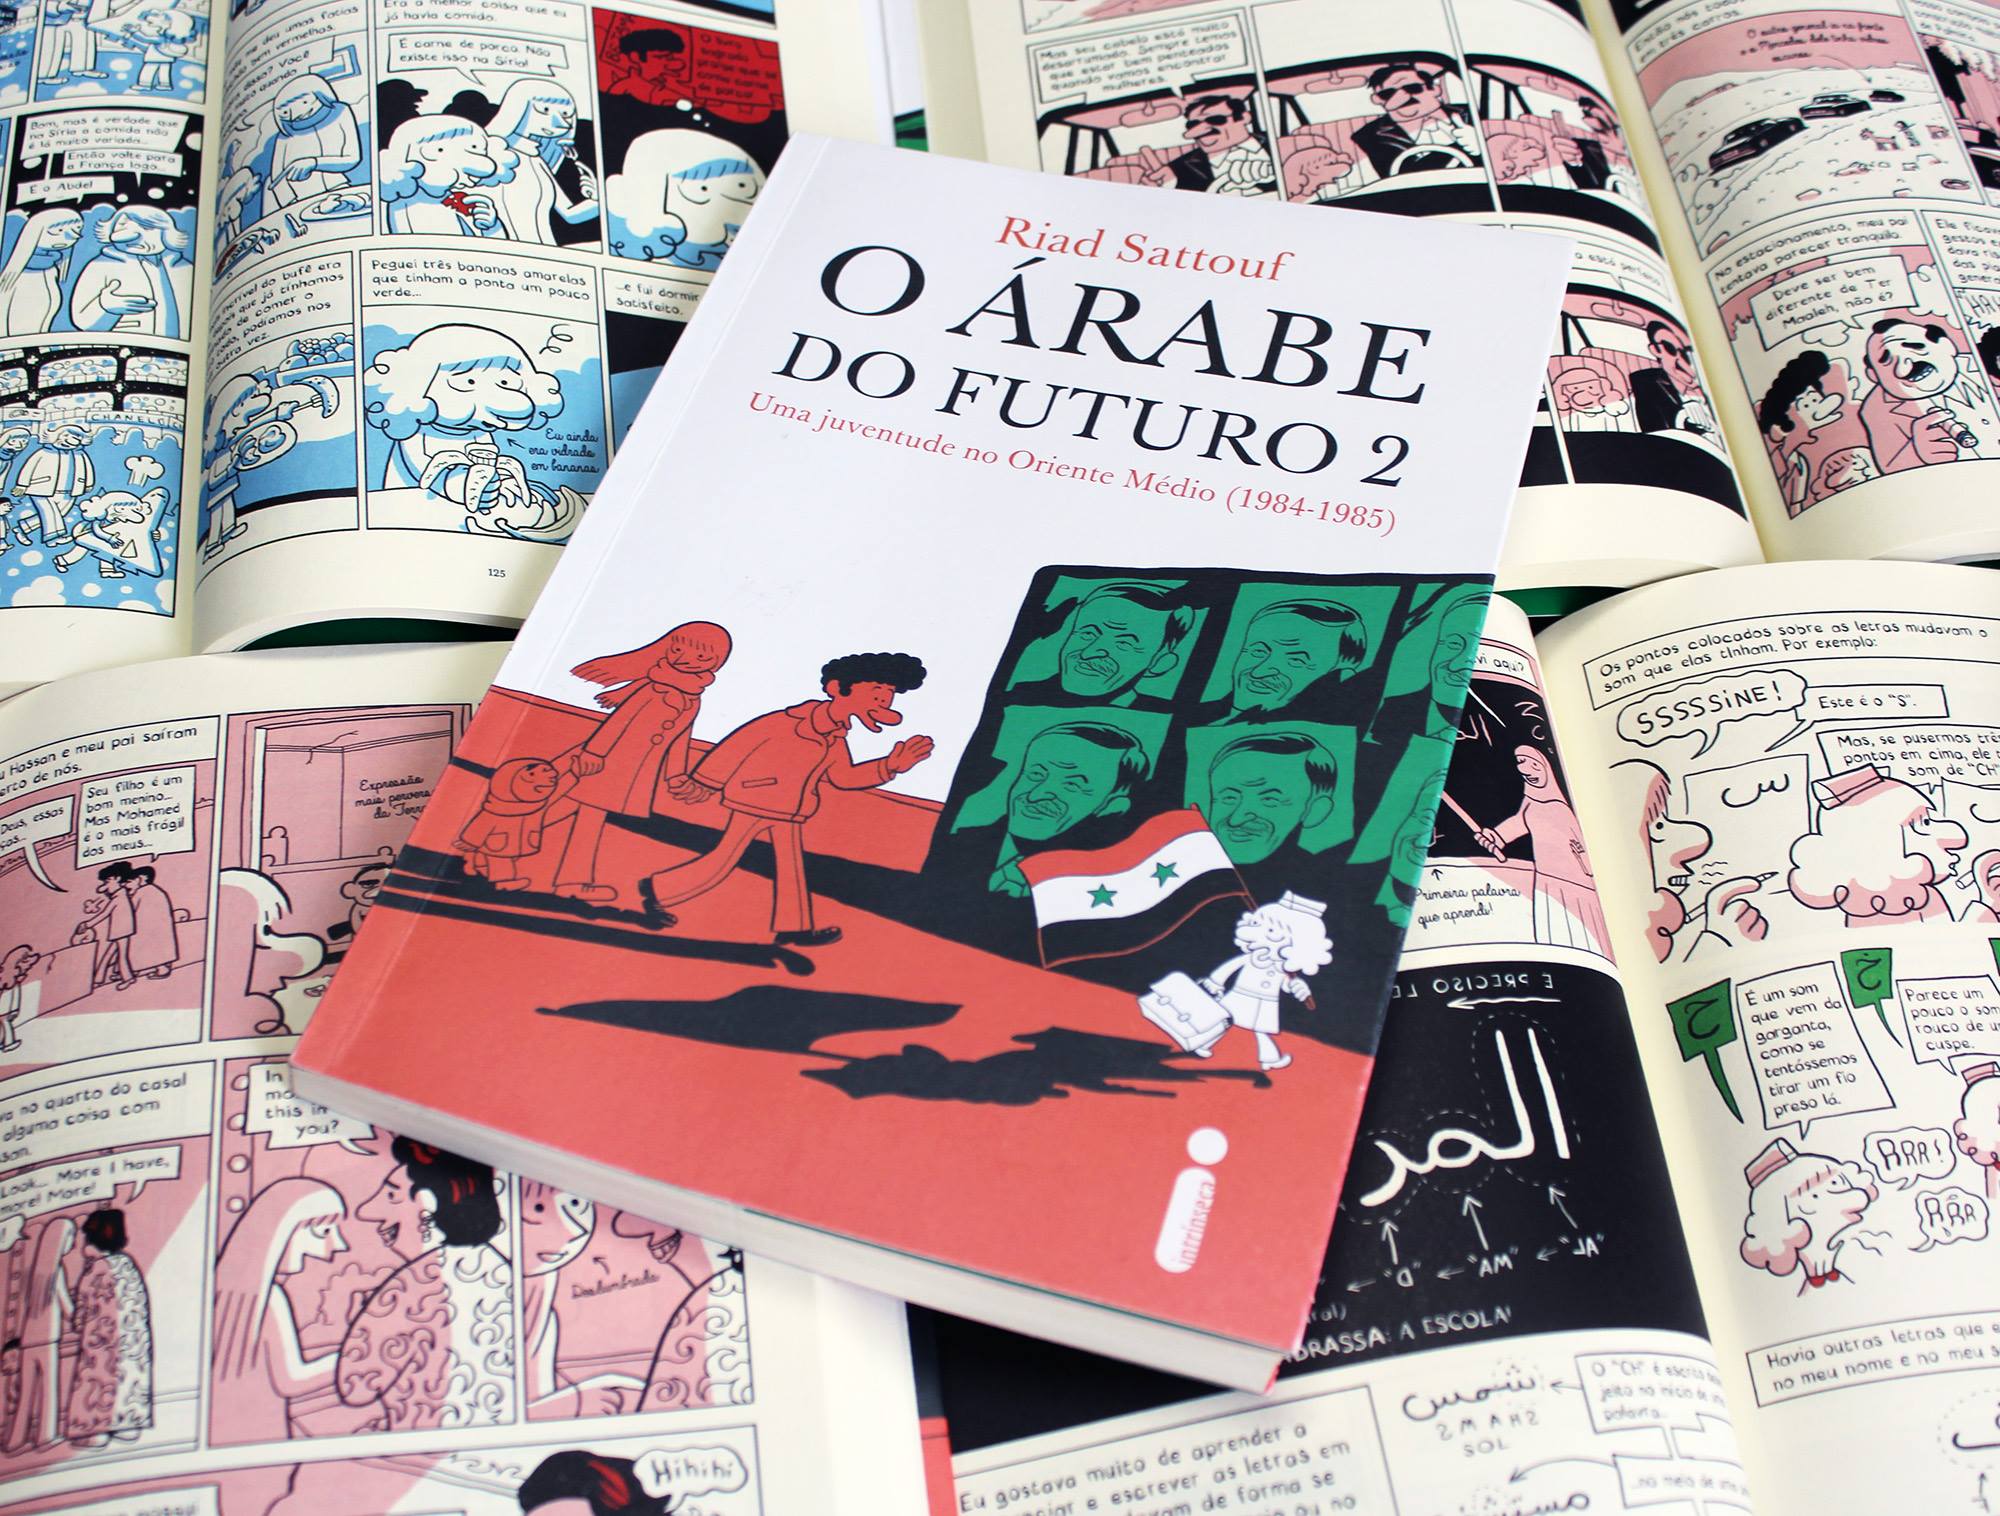 árabefacebook